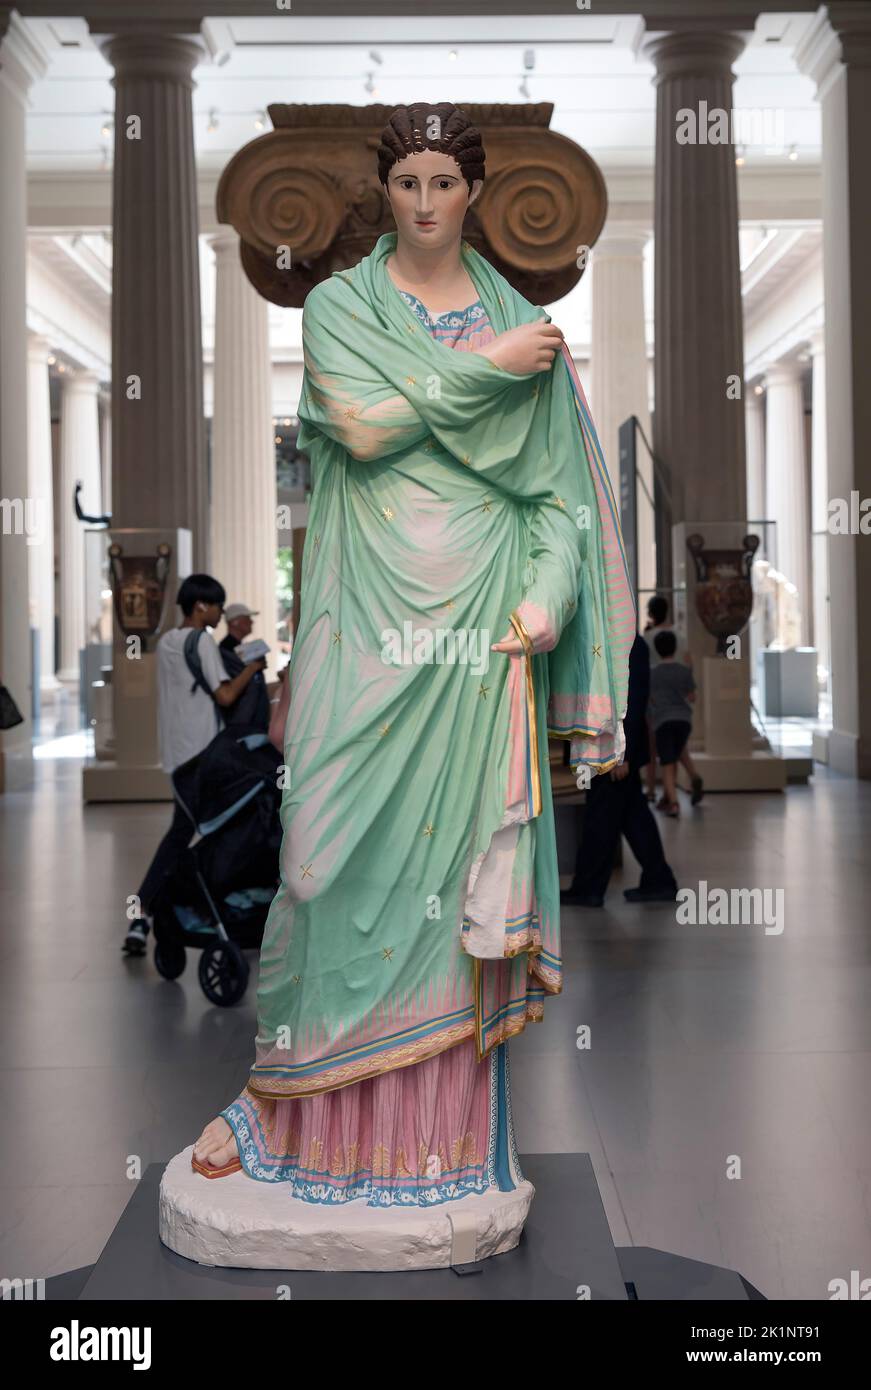 Reconstrucción en colores originales de una estatua de mármol de una mujer envuelta en un manto (llamada pequeña mujer herculaneum) expuesta en el Met Foto de stock